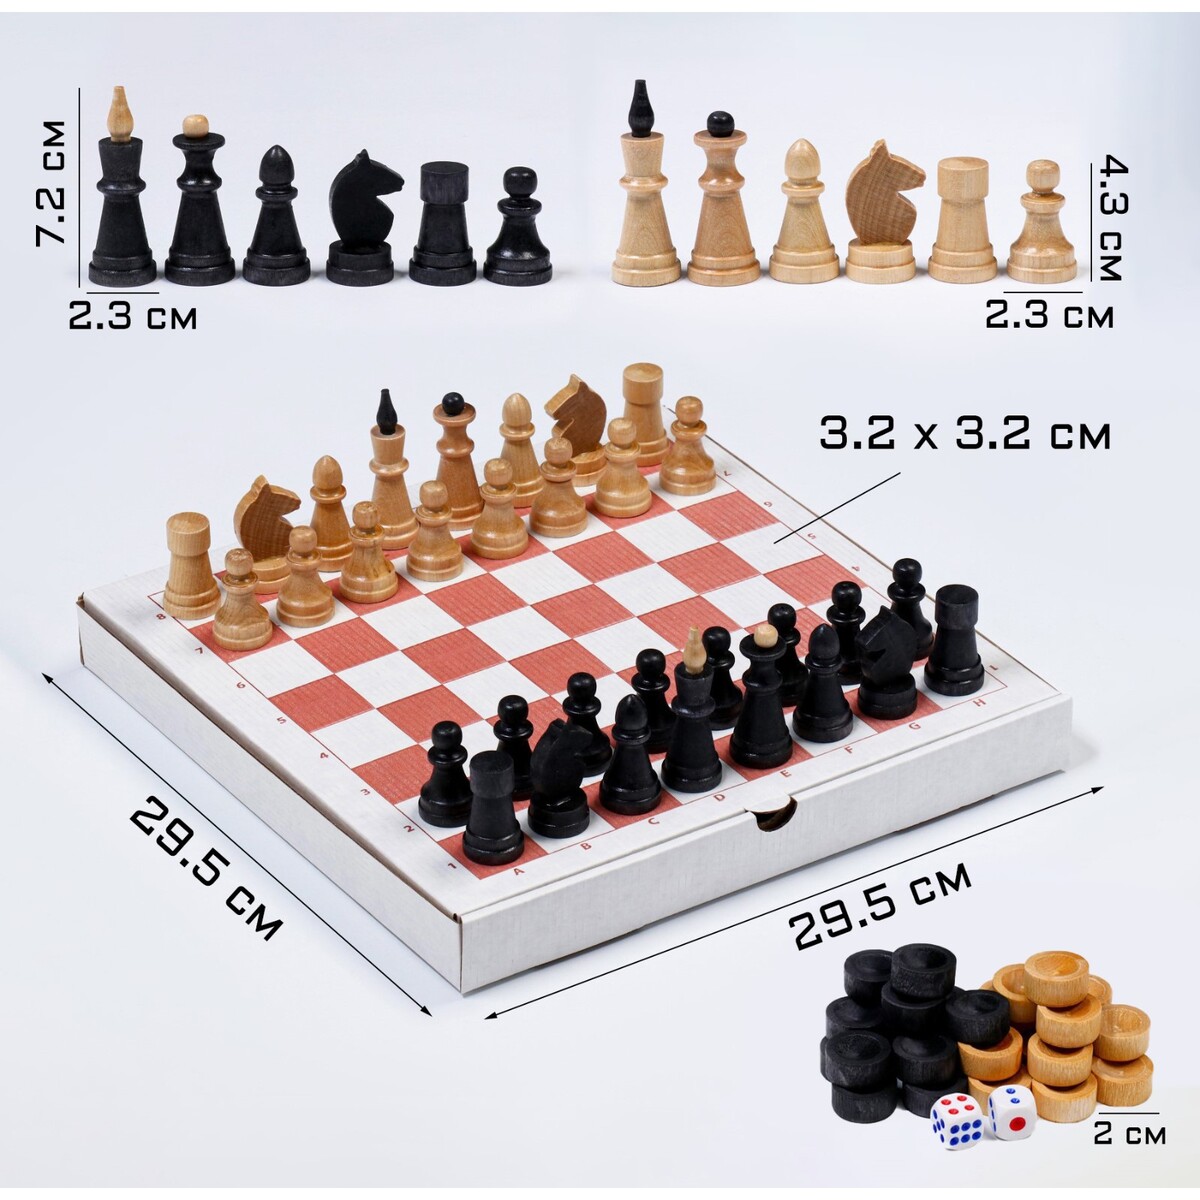 Настольная игра 3 в 1: шахматы, шашки, нарды, деревянные фигуры, доска 29.5 х 29.5 см игра 3 в 1 нарды шахматы шашки большая рыцари 255 18